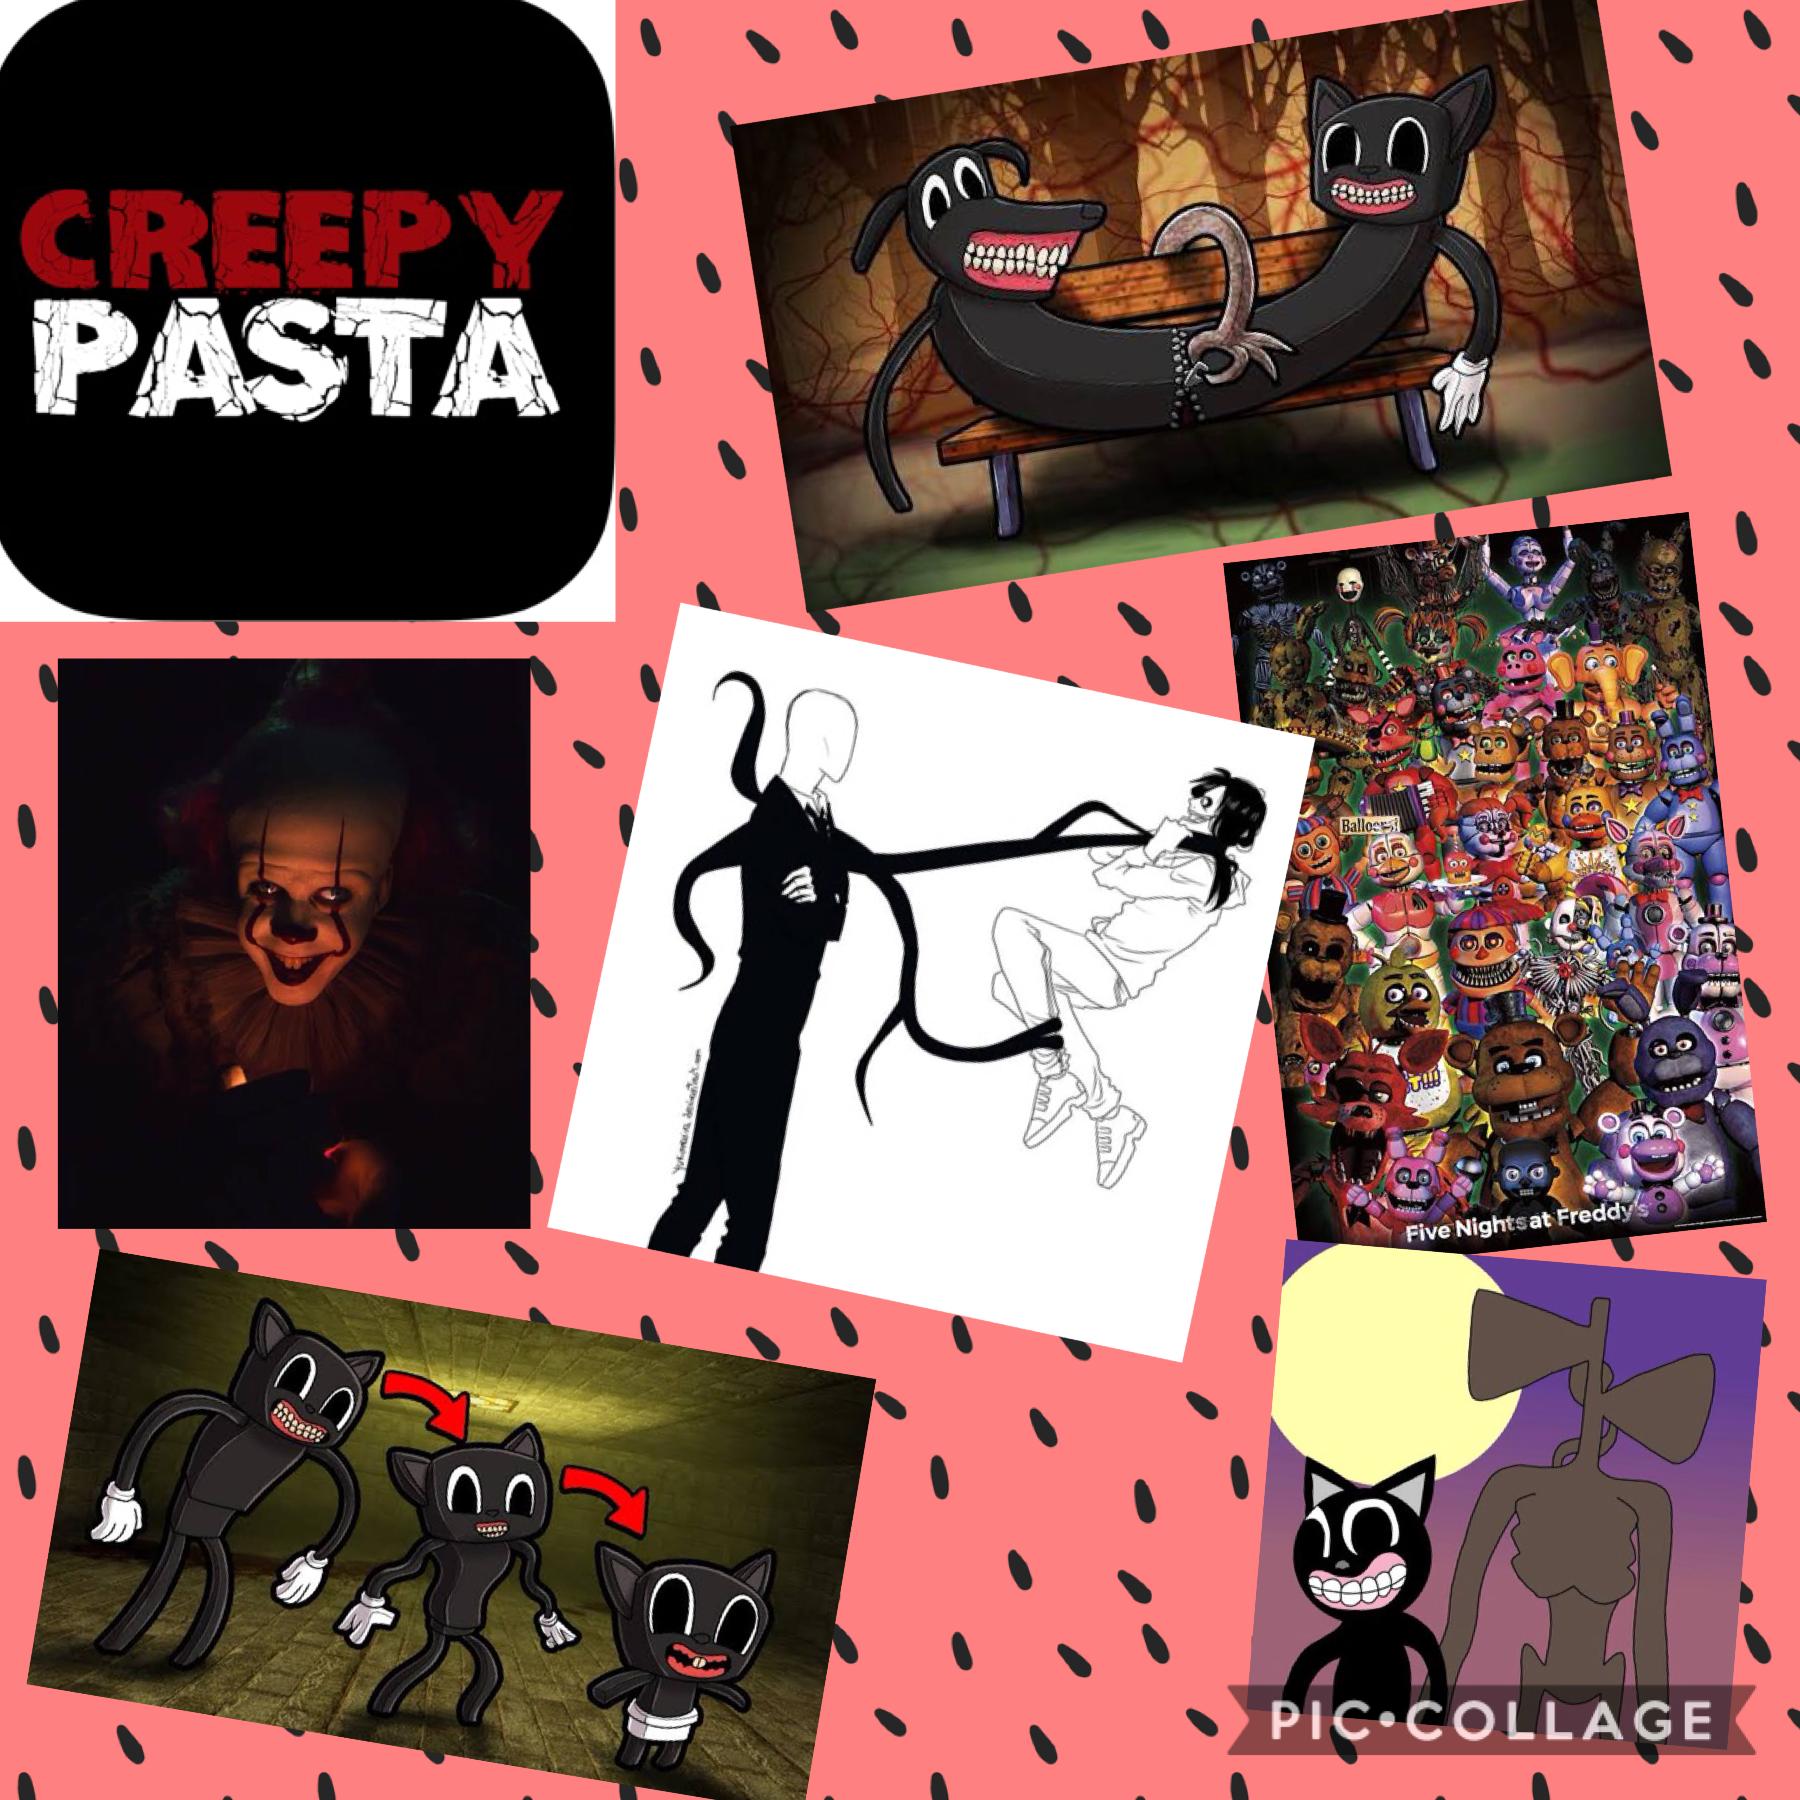 Creepy pasta!